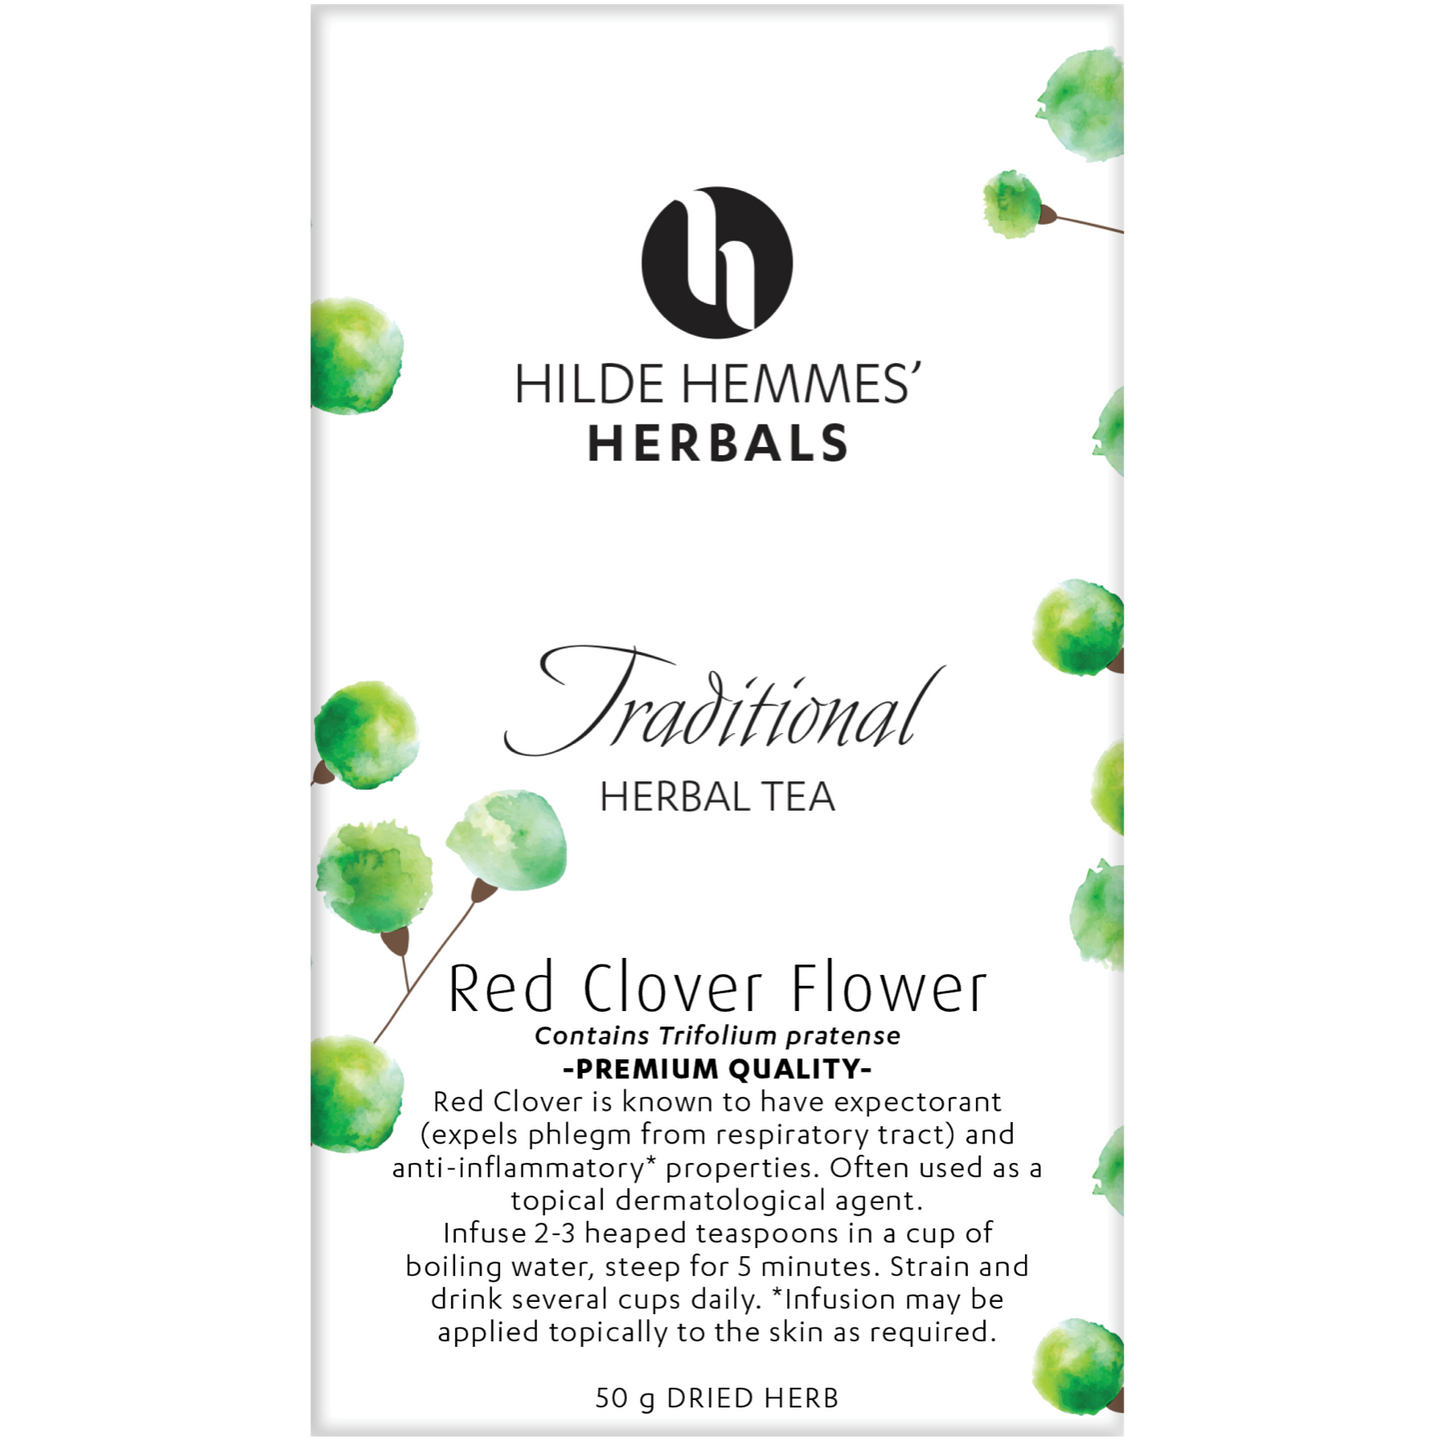 Hilde Hemmes Herbal's Tea 50g, Red Clover Flower (Loose Leaf)